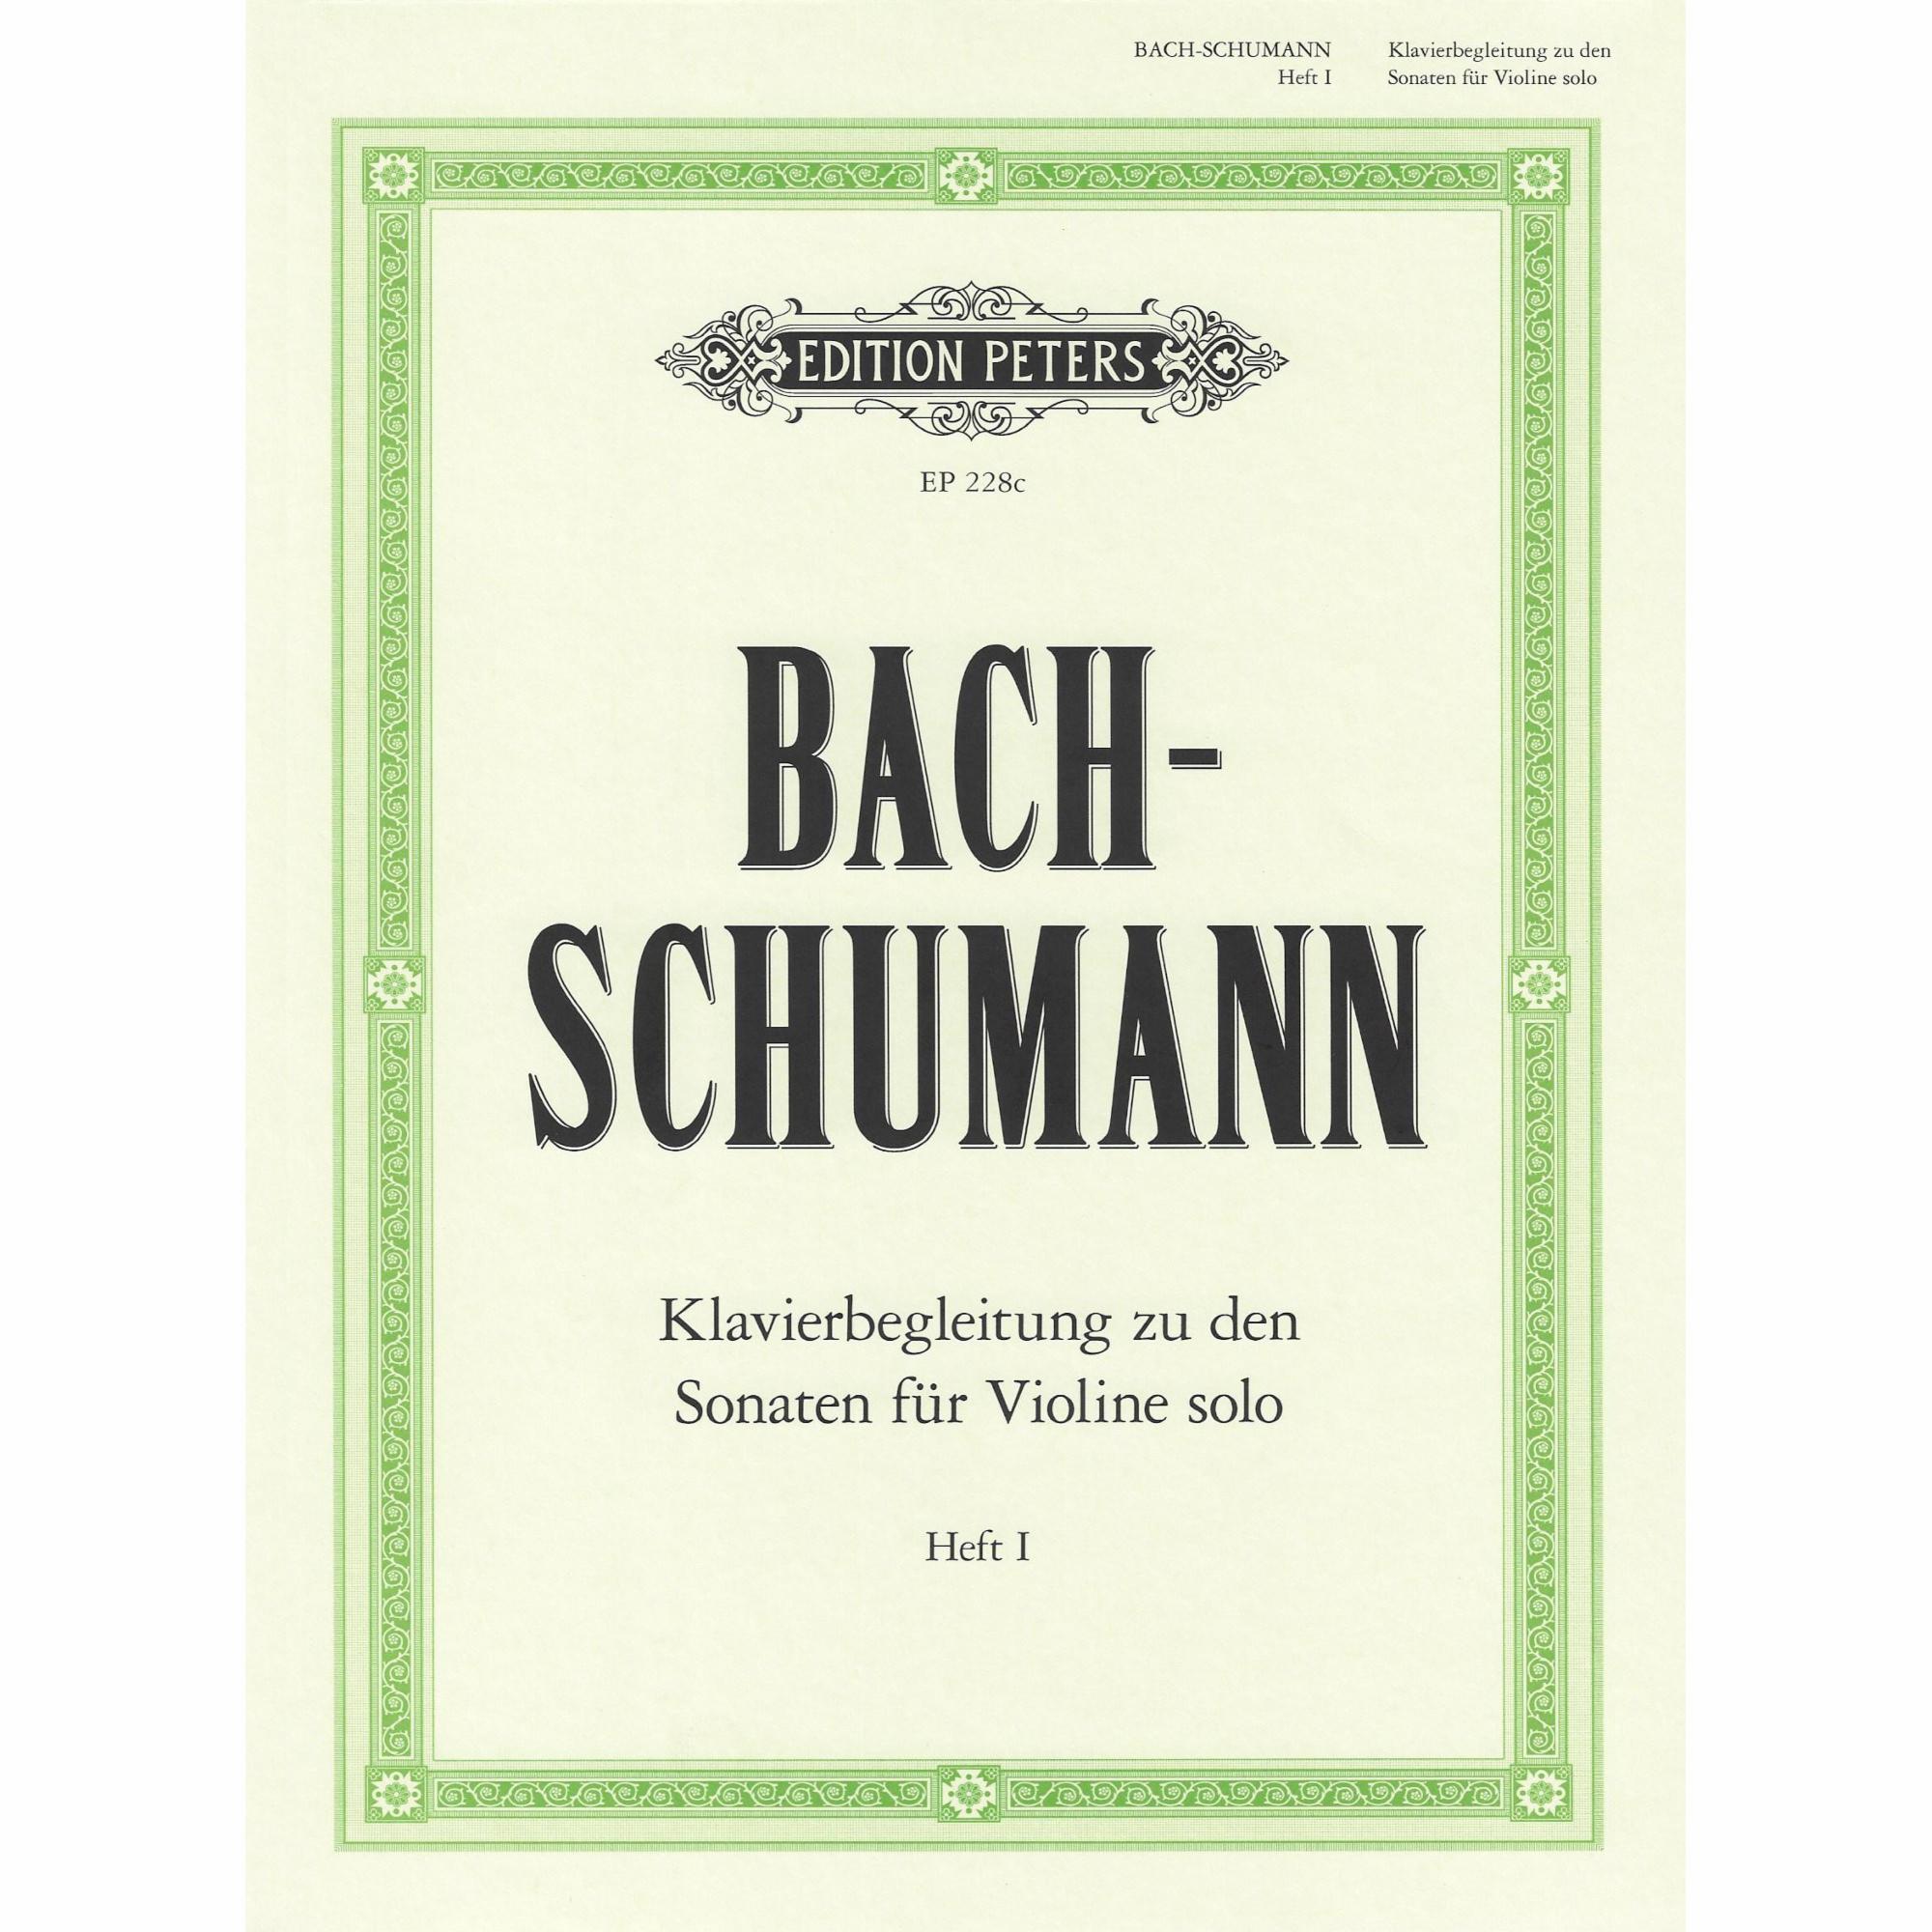 Bach/Schumann -- Piano Accompaniment to the Sonatas for Solo Violin